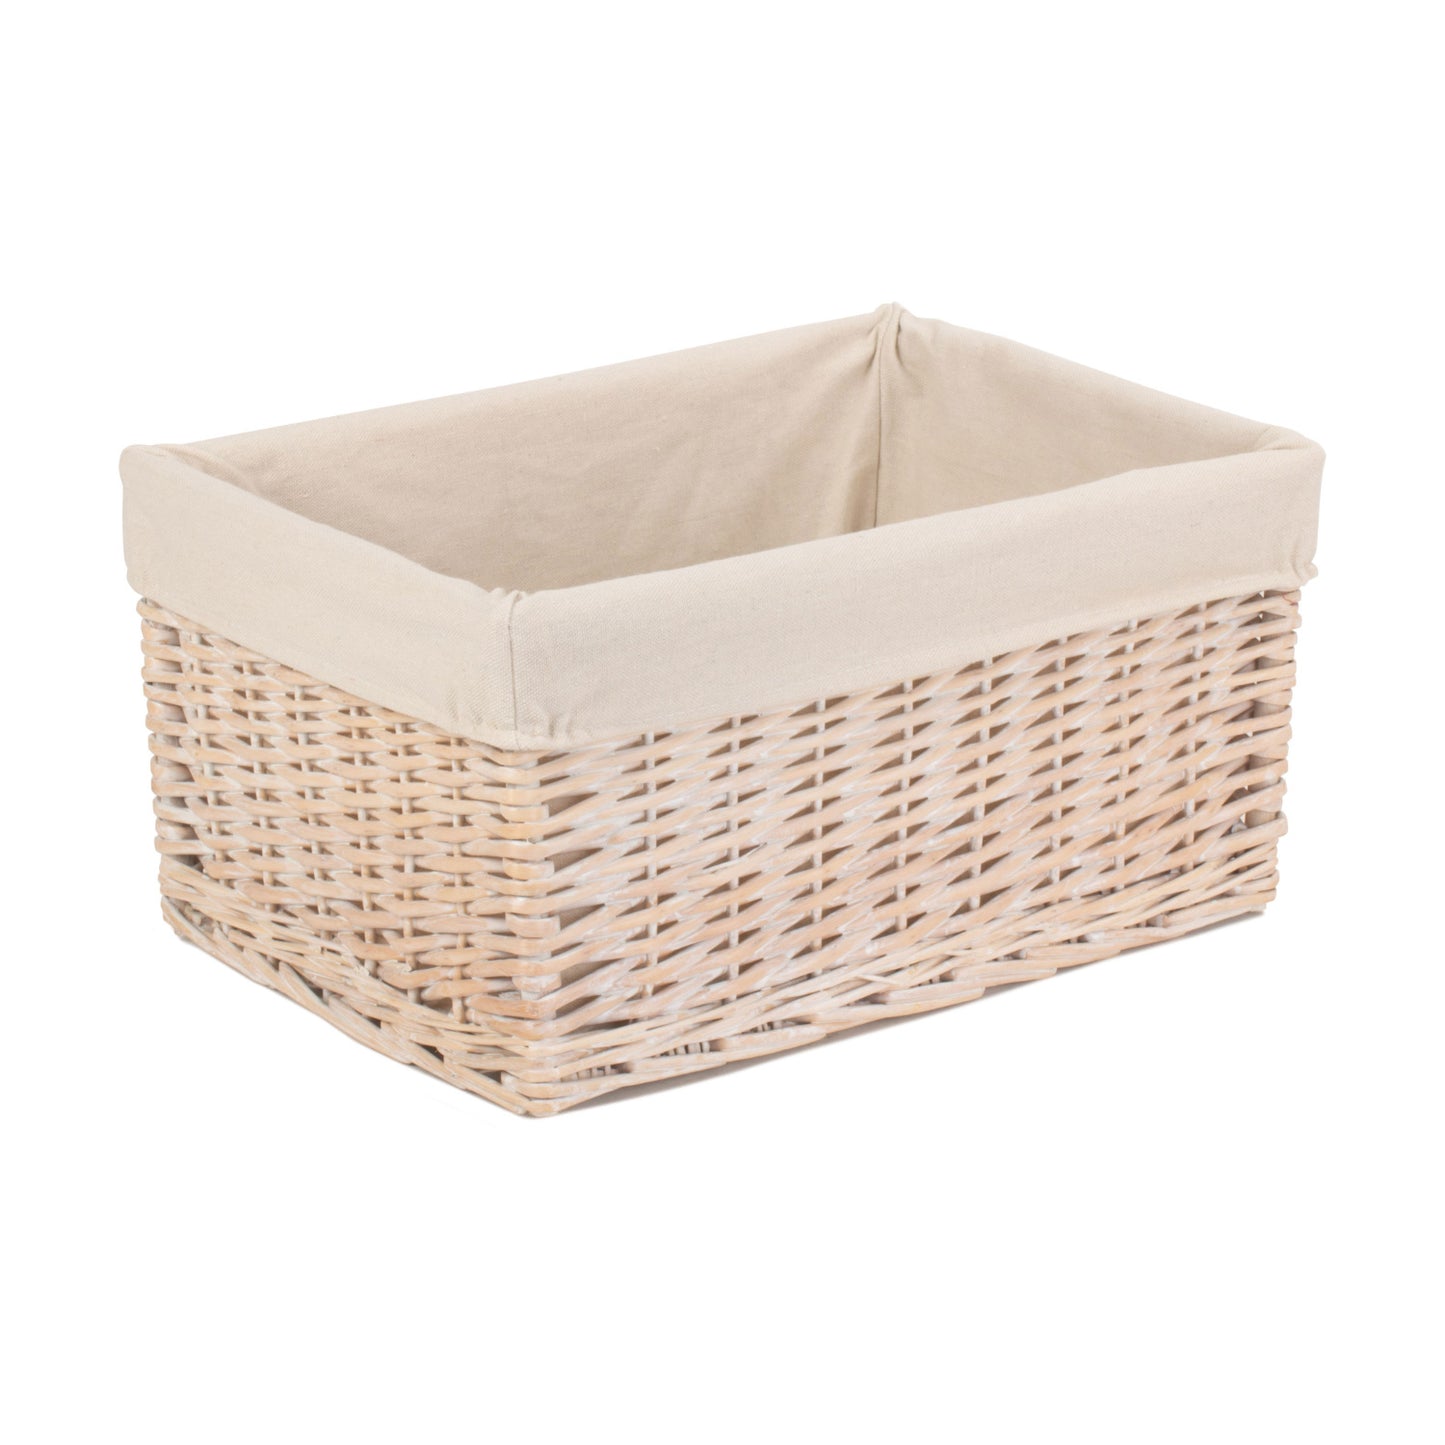 Large White Wash Storage Basket With White Lining